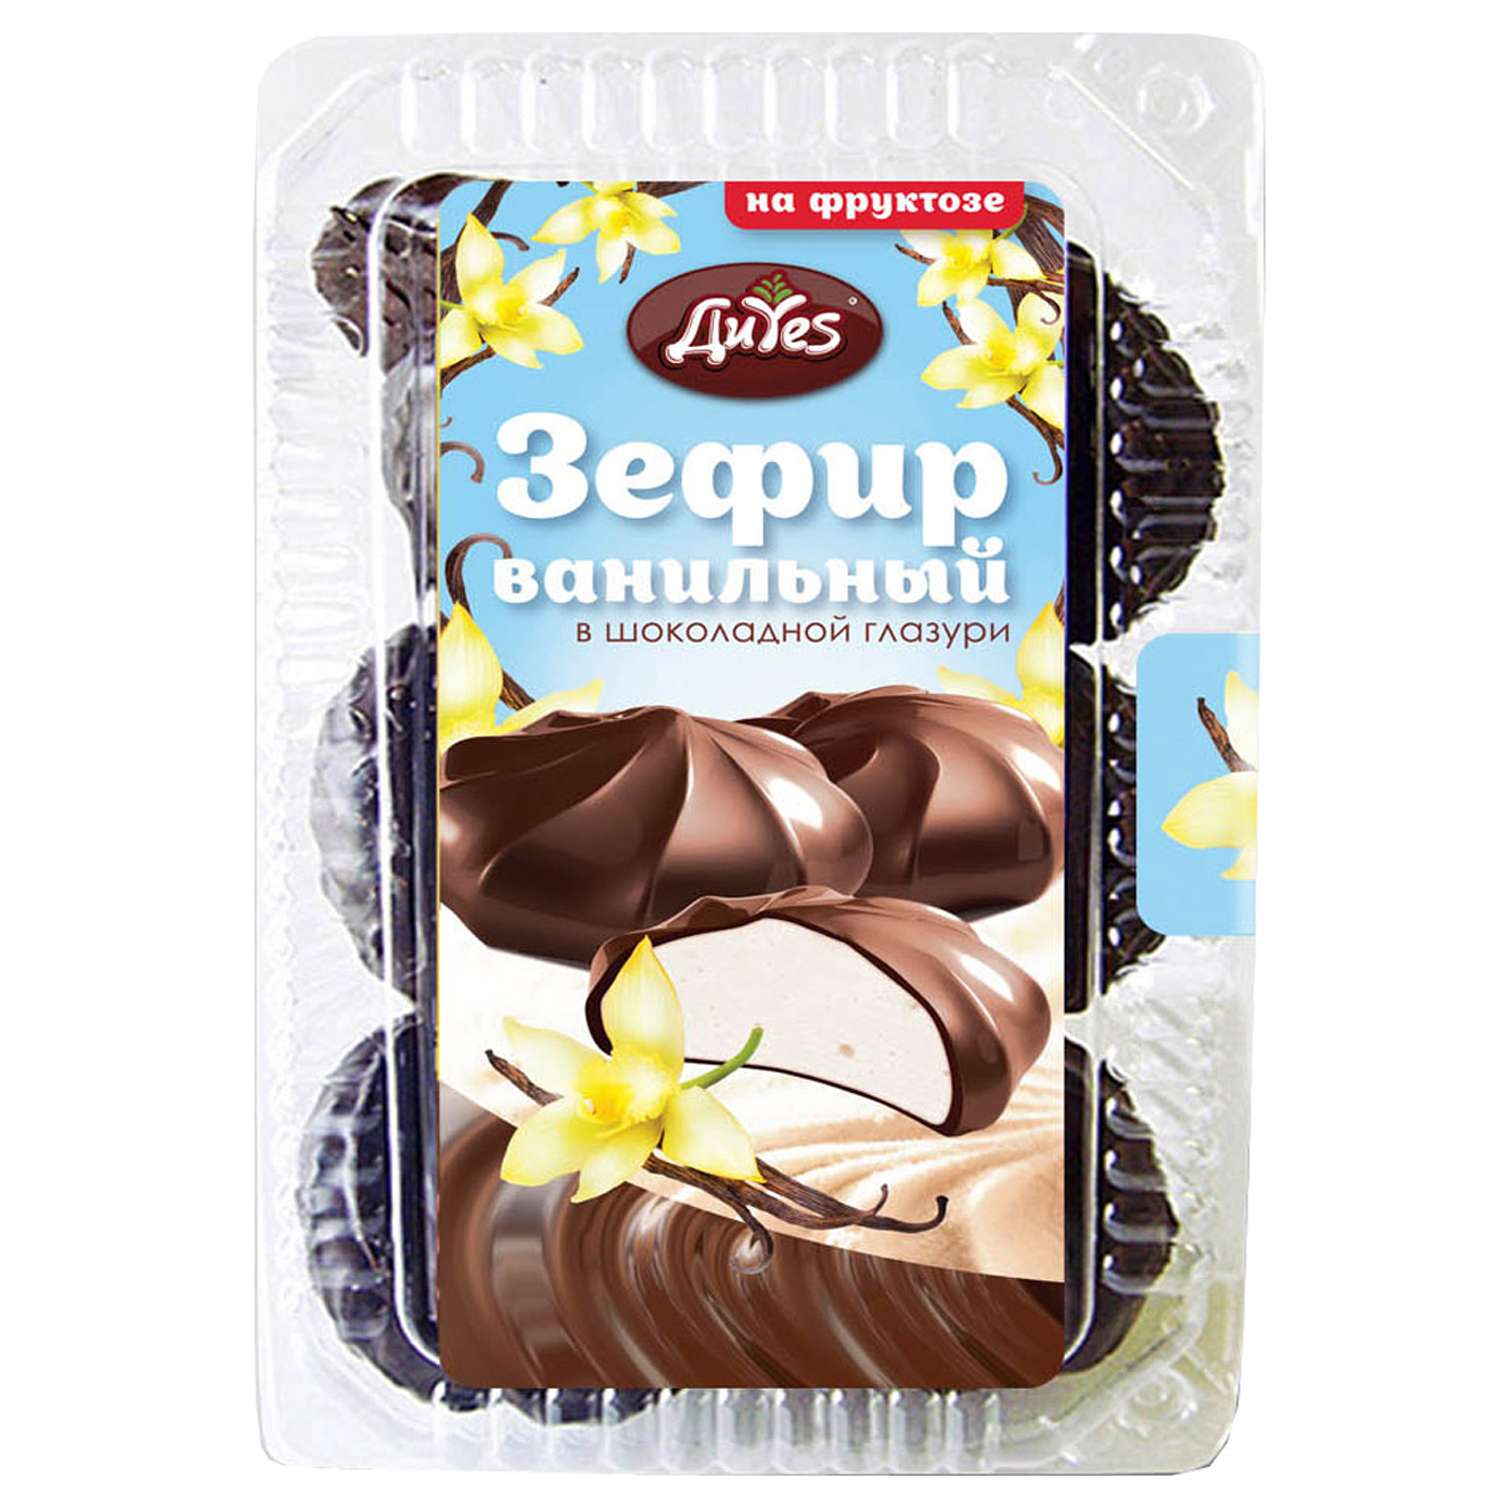 Зефир DiYes ванильный в шоколадной глазури на фруктозе 200г - фото 1